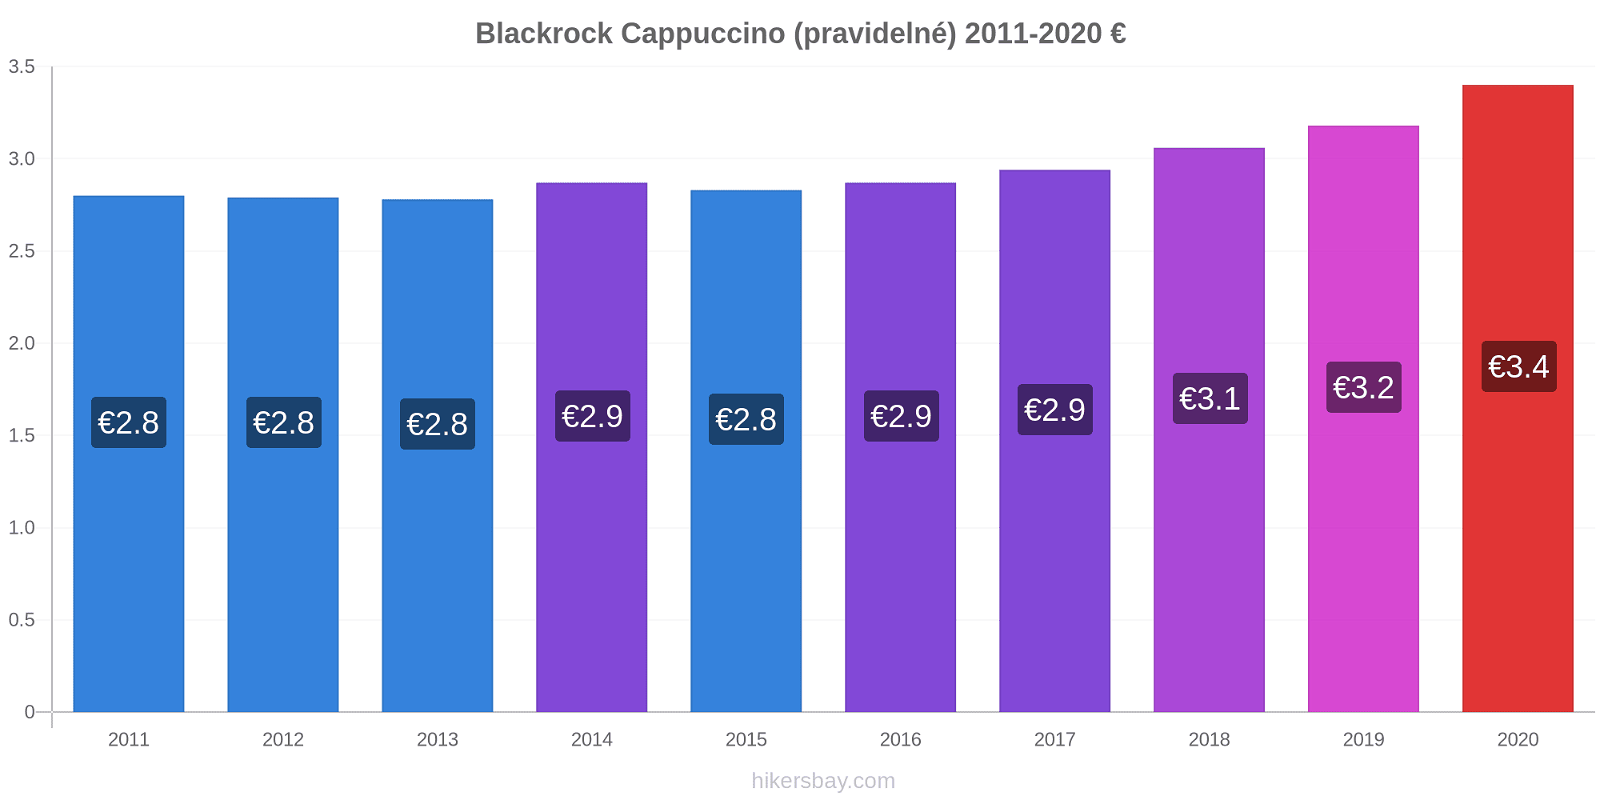 Blackrock změny cen Cappuccino (pravidelné) hikersbay.com